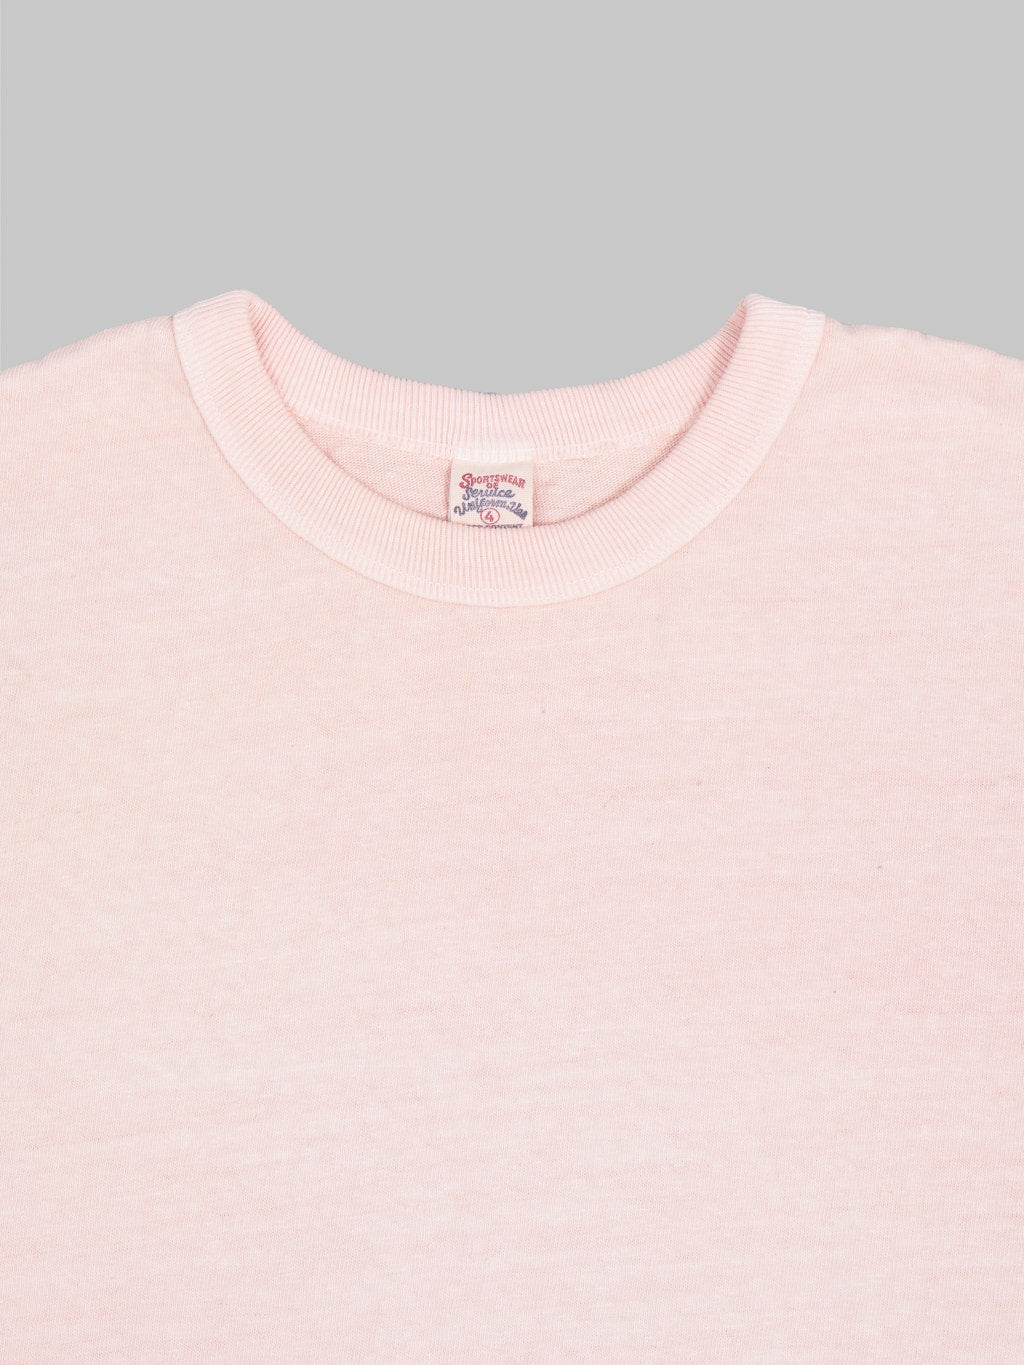 UES N8 Slub Nep Short Sleeve TShirt pink  collar